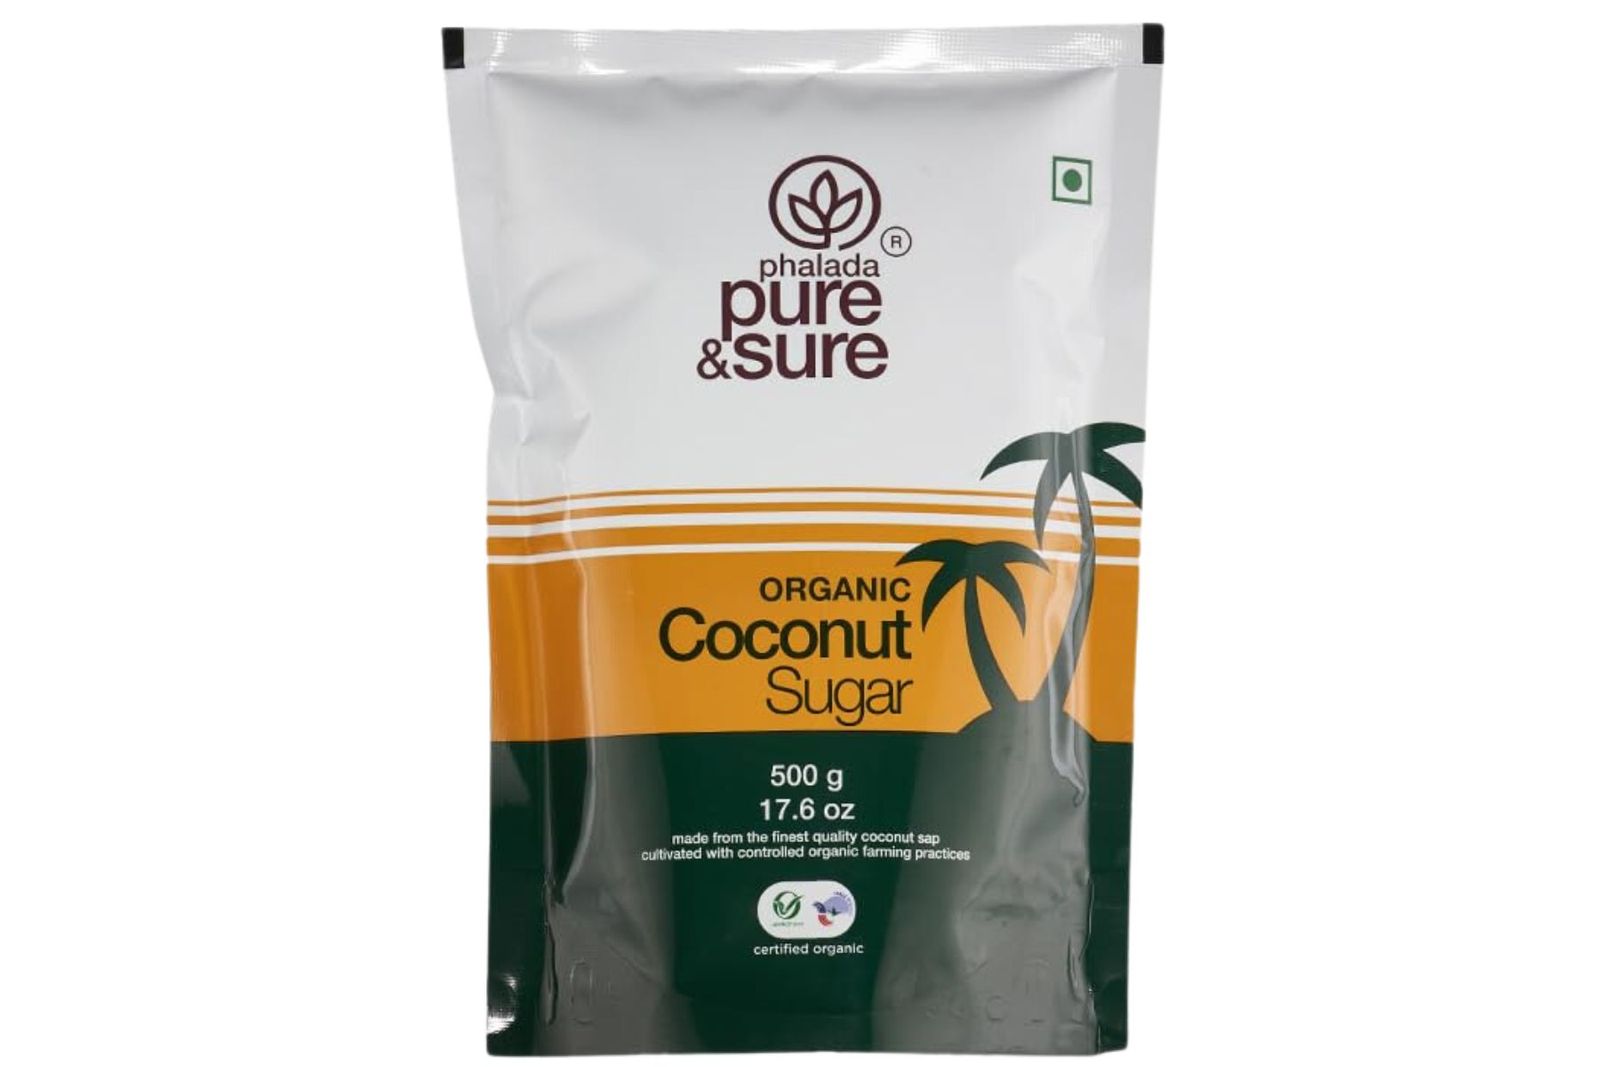 Pure & Sure Organic Coconut Sugar